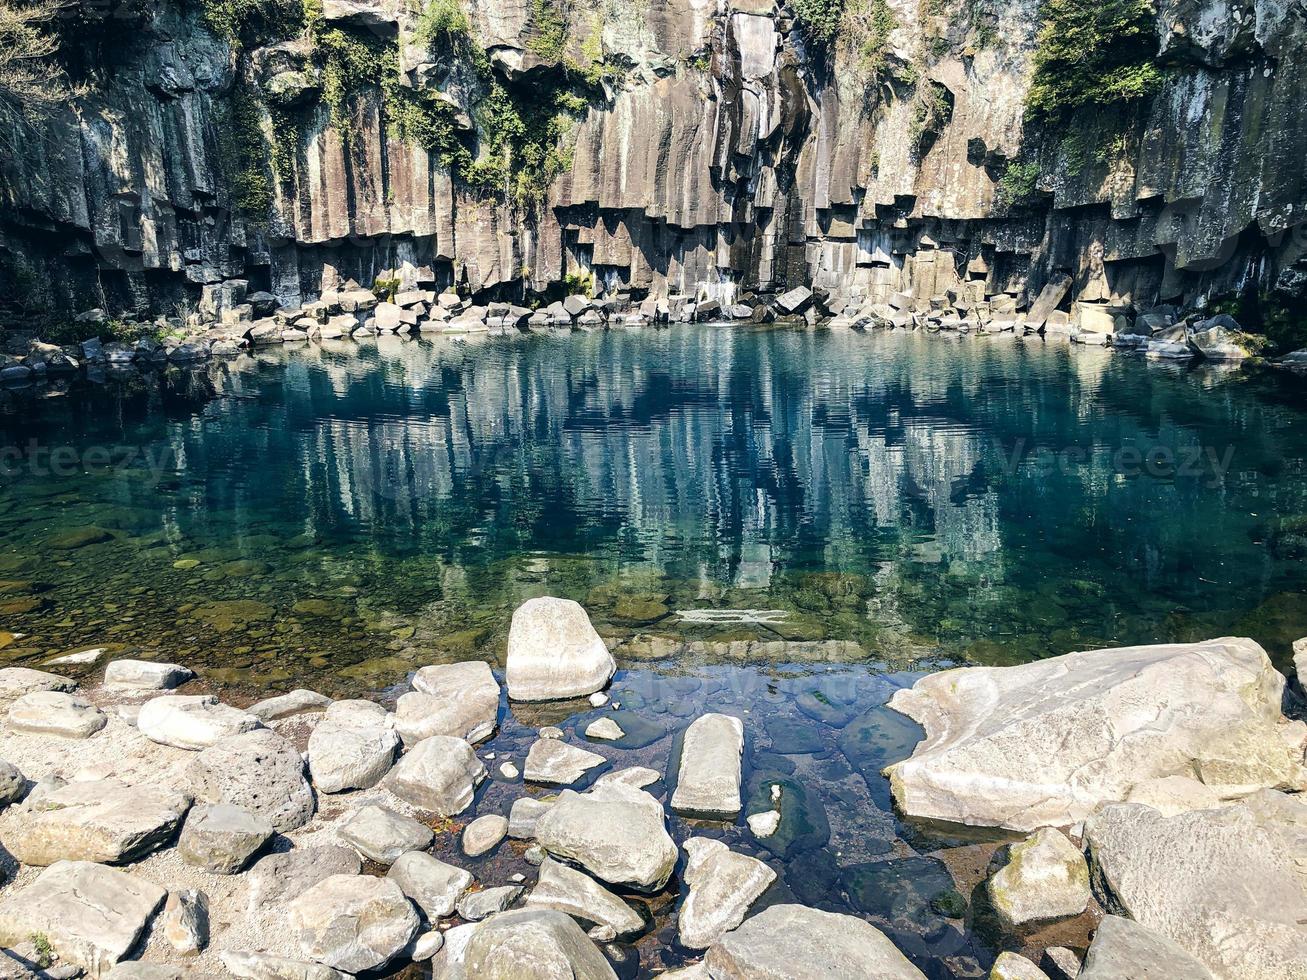 rocher reflété dans l'eau. lave solidifiée près de l'eau d'un lac sur l'île de jeju. Corée du Sud photo